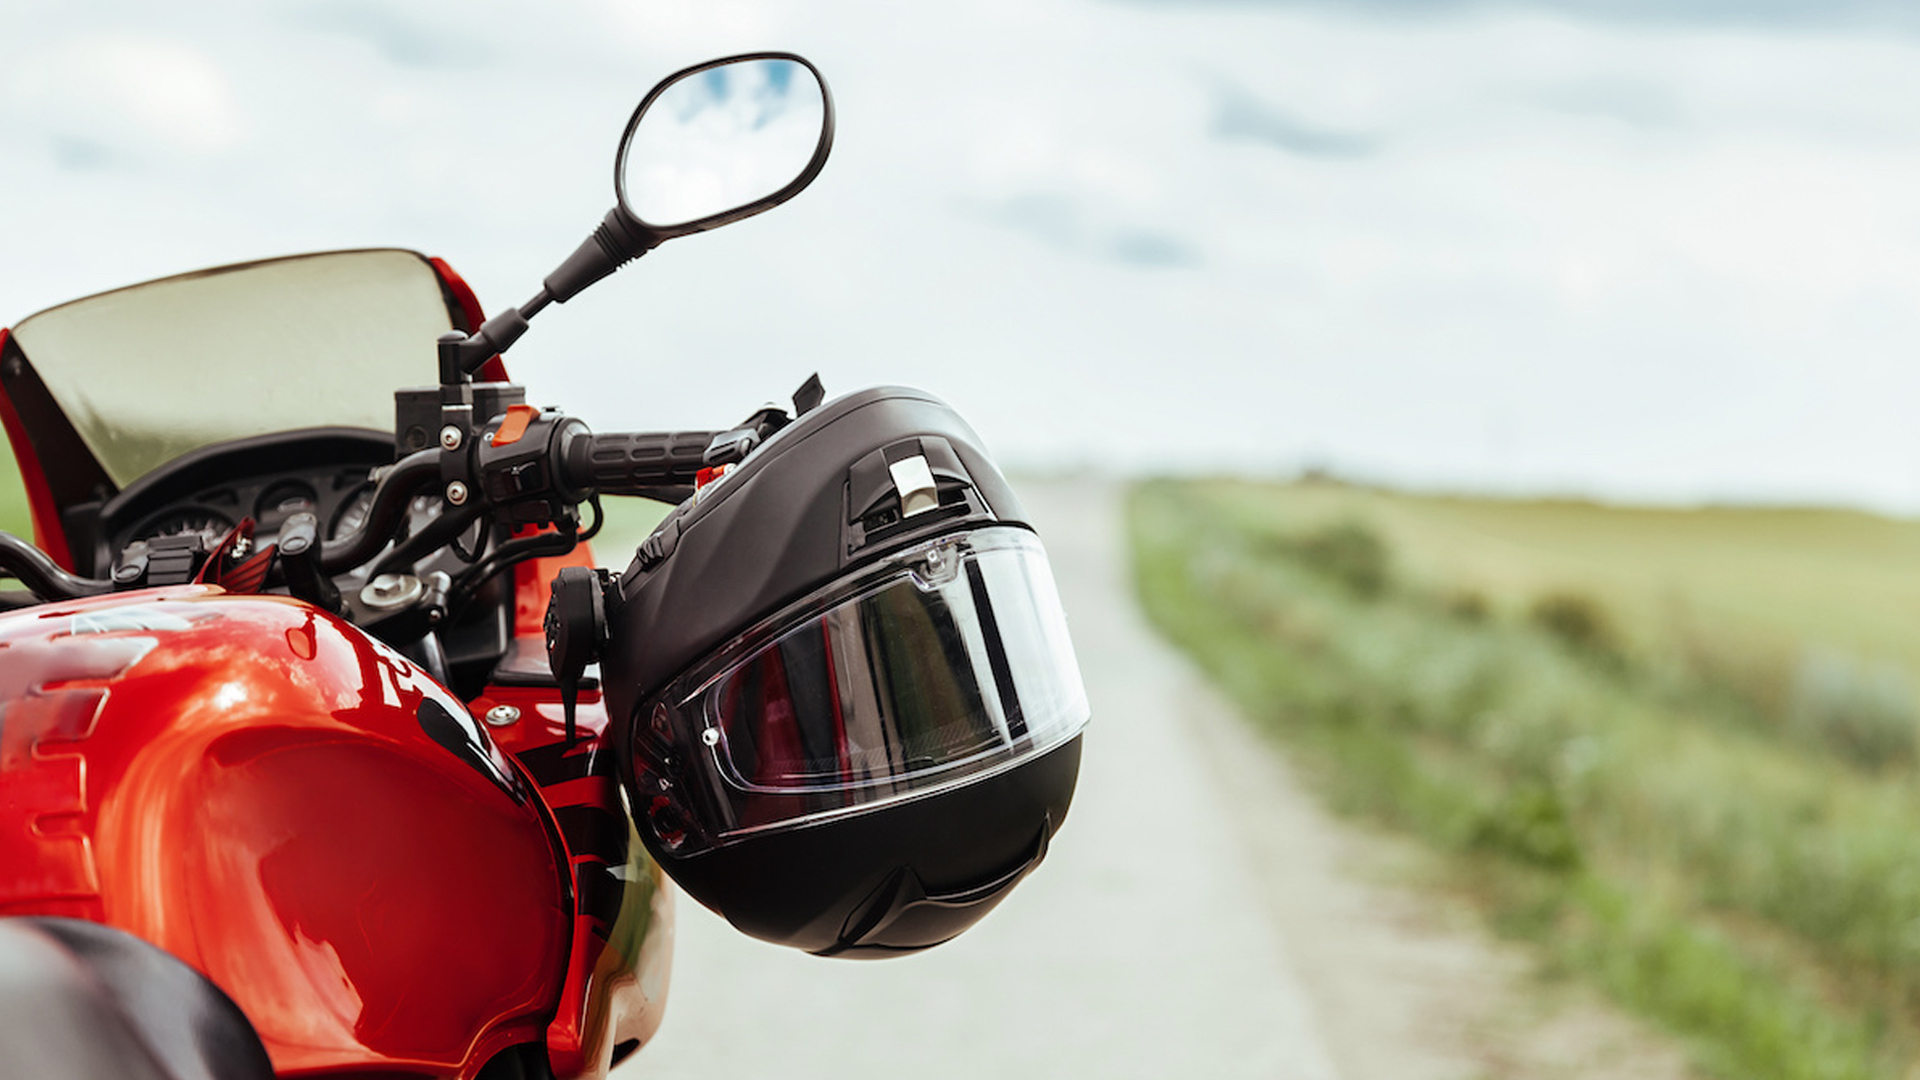 Motorcycle helmet hanging on motorcycle right steering handle.